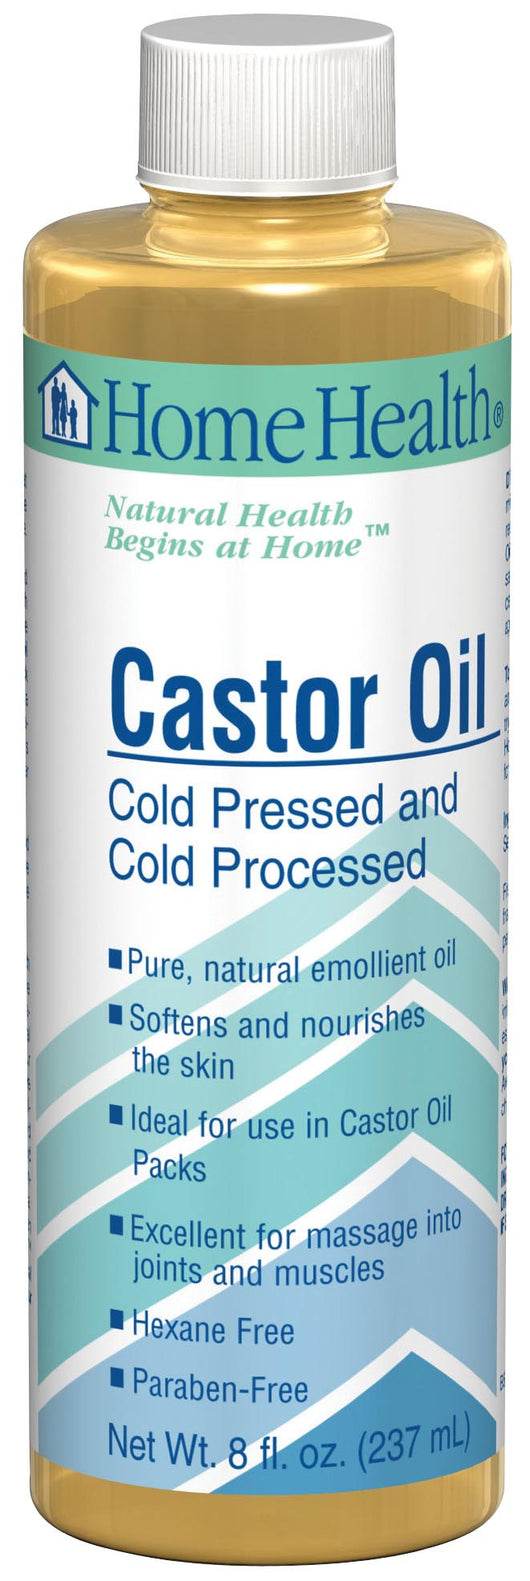 Home Health Castor Oil - 8 ozs.